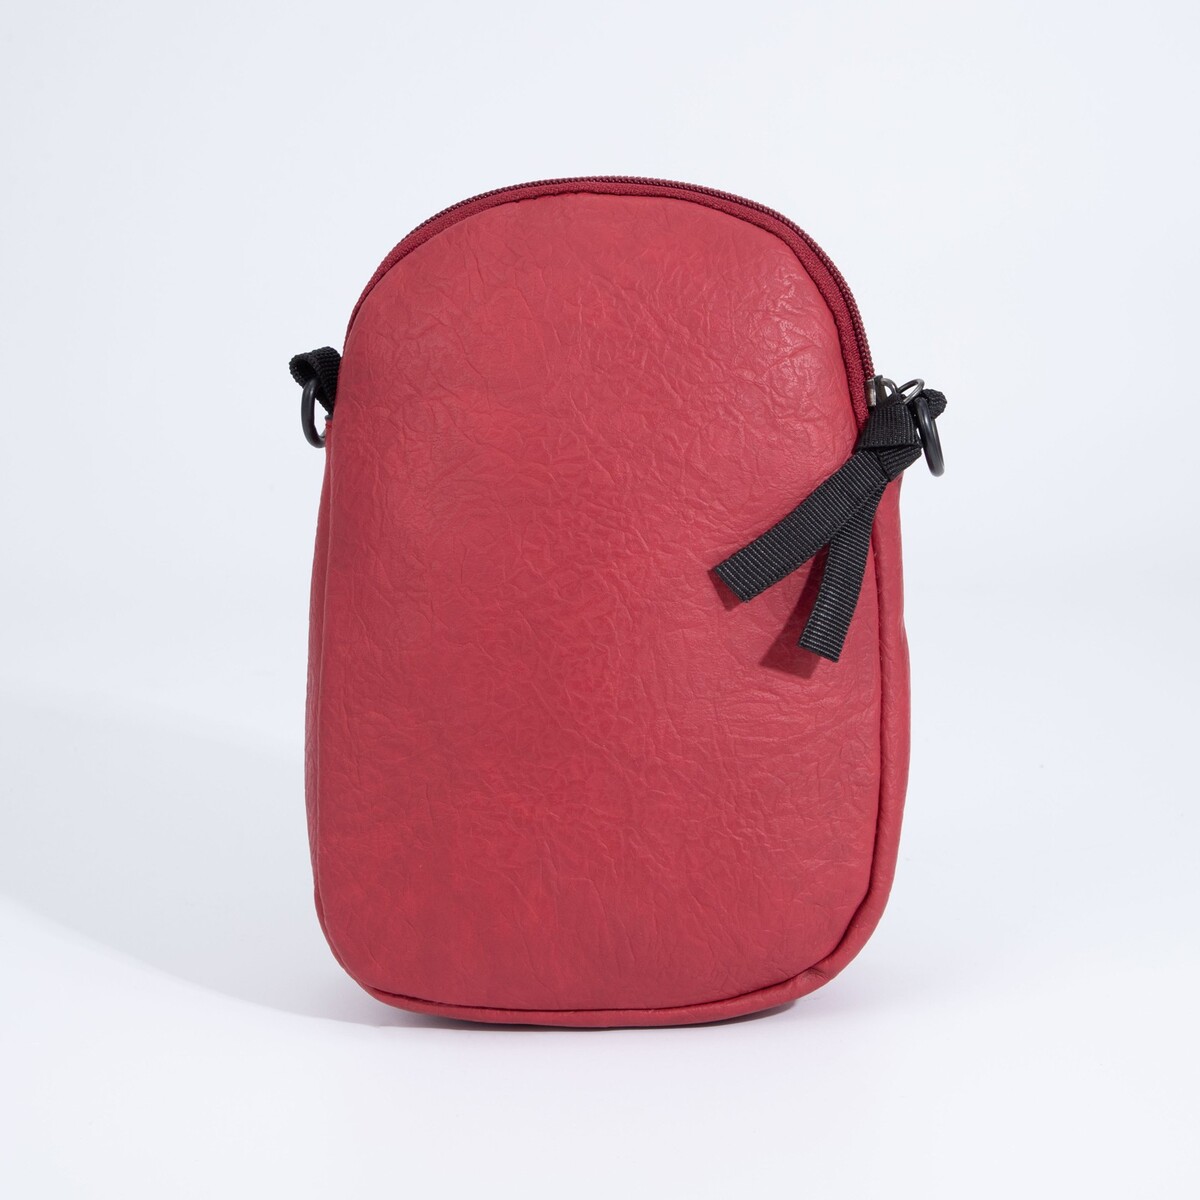 Сумка женская, отдел на молнии, длинный ремень, цвет бордовый сумка кросс боди на молнии бордовый